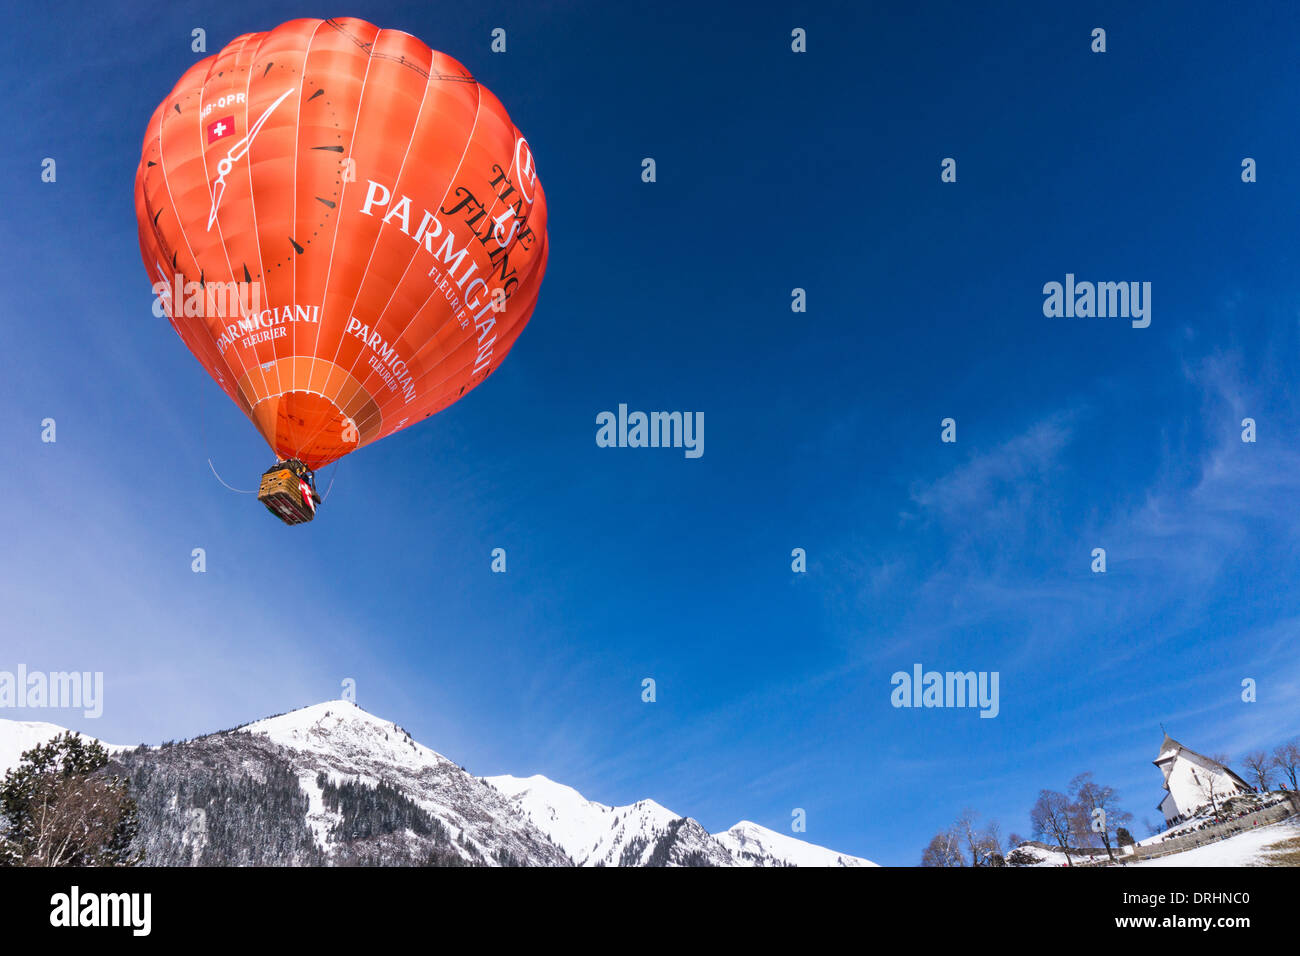 Hauptsponsor Parmigiani Ballon in der Luft. Chateau d ' Oex, Schweiz Stockfoto